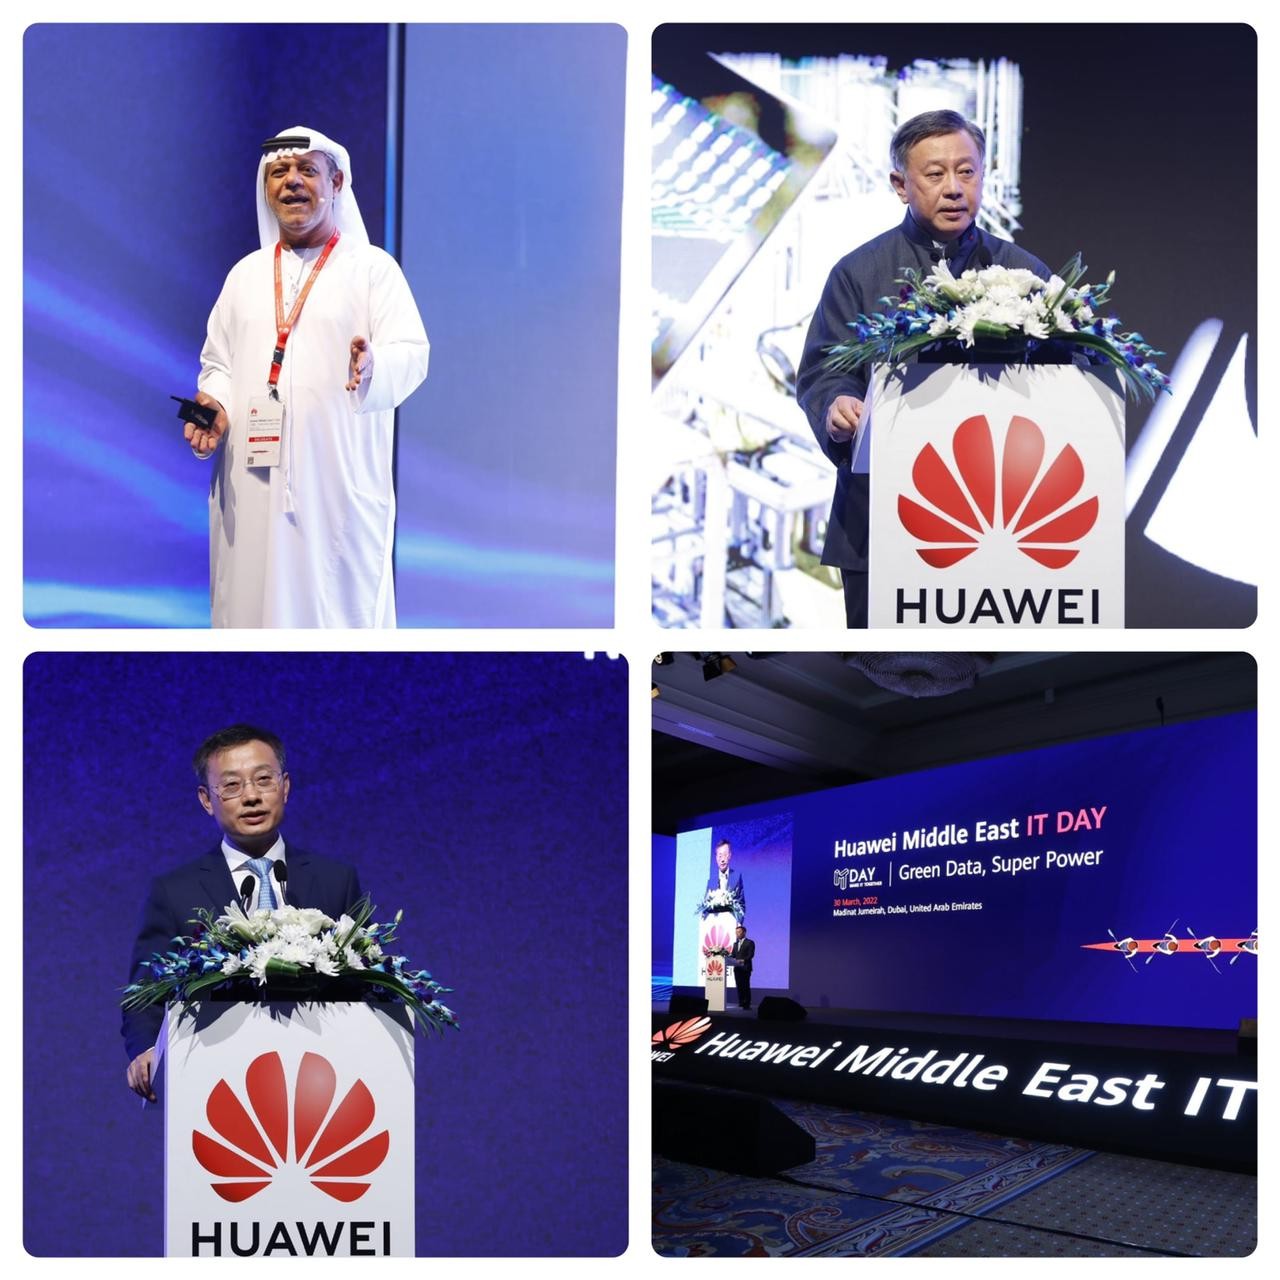 "مؤتمر هواوي لتكنولوجيا المعلومات في الشرق الأوسط 2022" يناقش مستقبل مراكز البيانات الخضراء